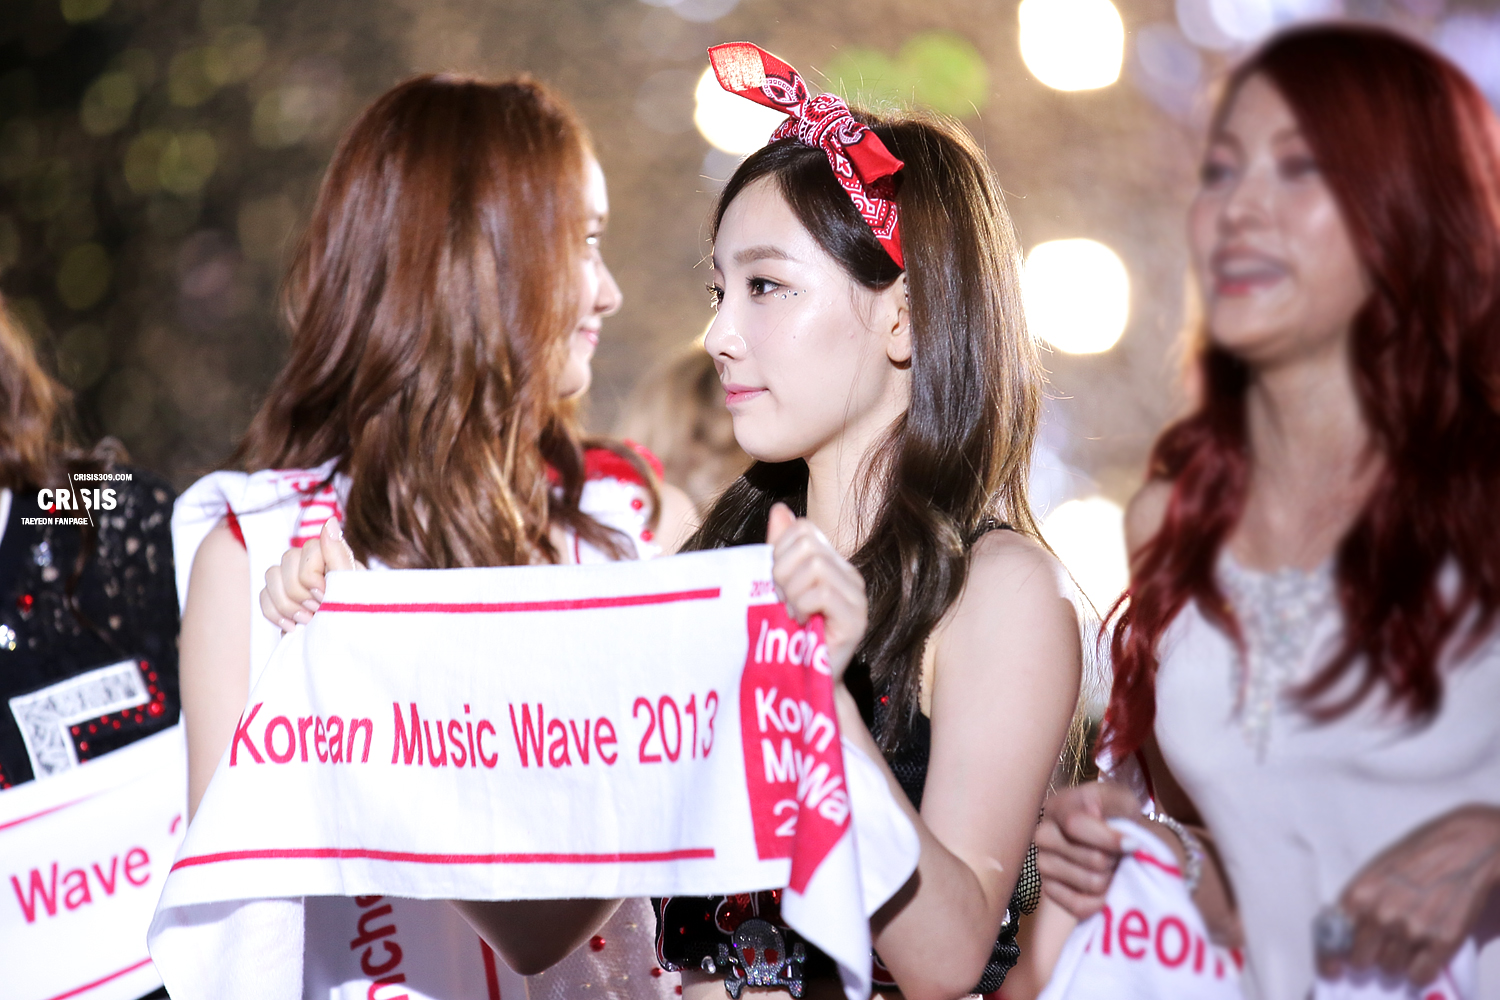 [PIC][01-09-2013]Hình ảnh mới nhất từ "Incheon Korean Music Wave 2013" của SNSD và MC YulTi vào tối nay - Page 7 263BD1395237234F2F2CC4